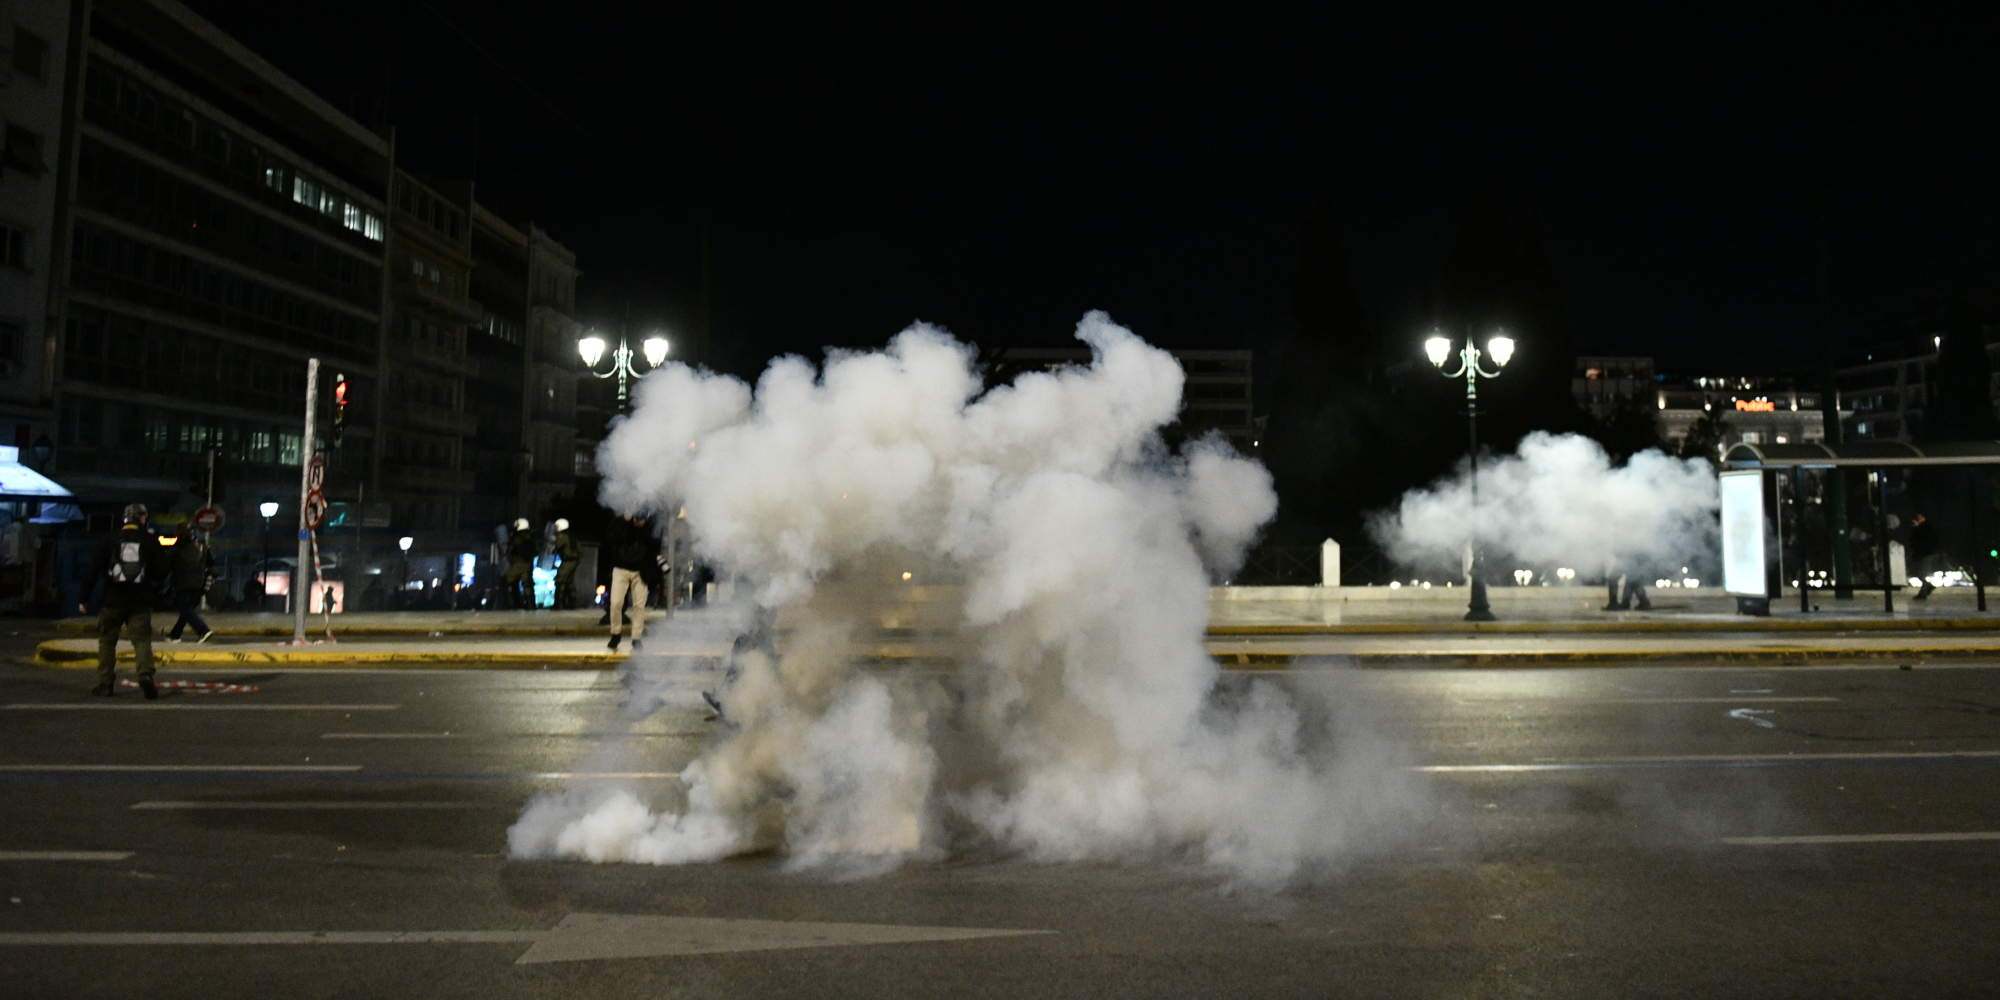 Χημικά στο κέντρο της Αθήνας, κατά τη διάρκεια διαδήλωσης για το δυστύχημα στα Τέμπη / Φωτογραφία: Eurokinissi